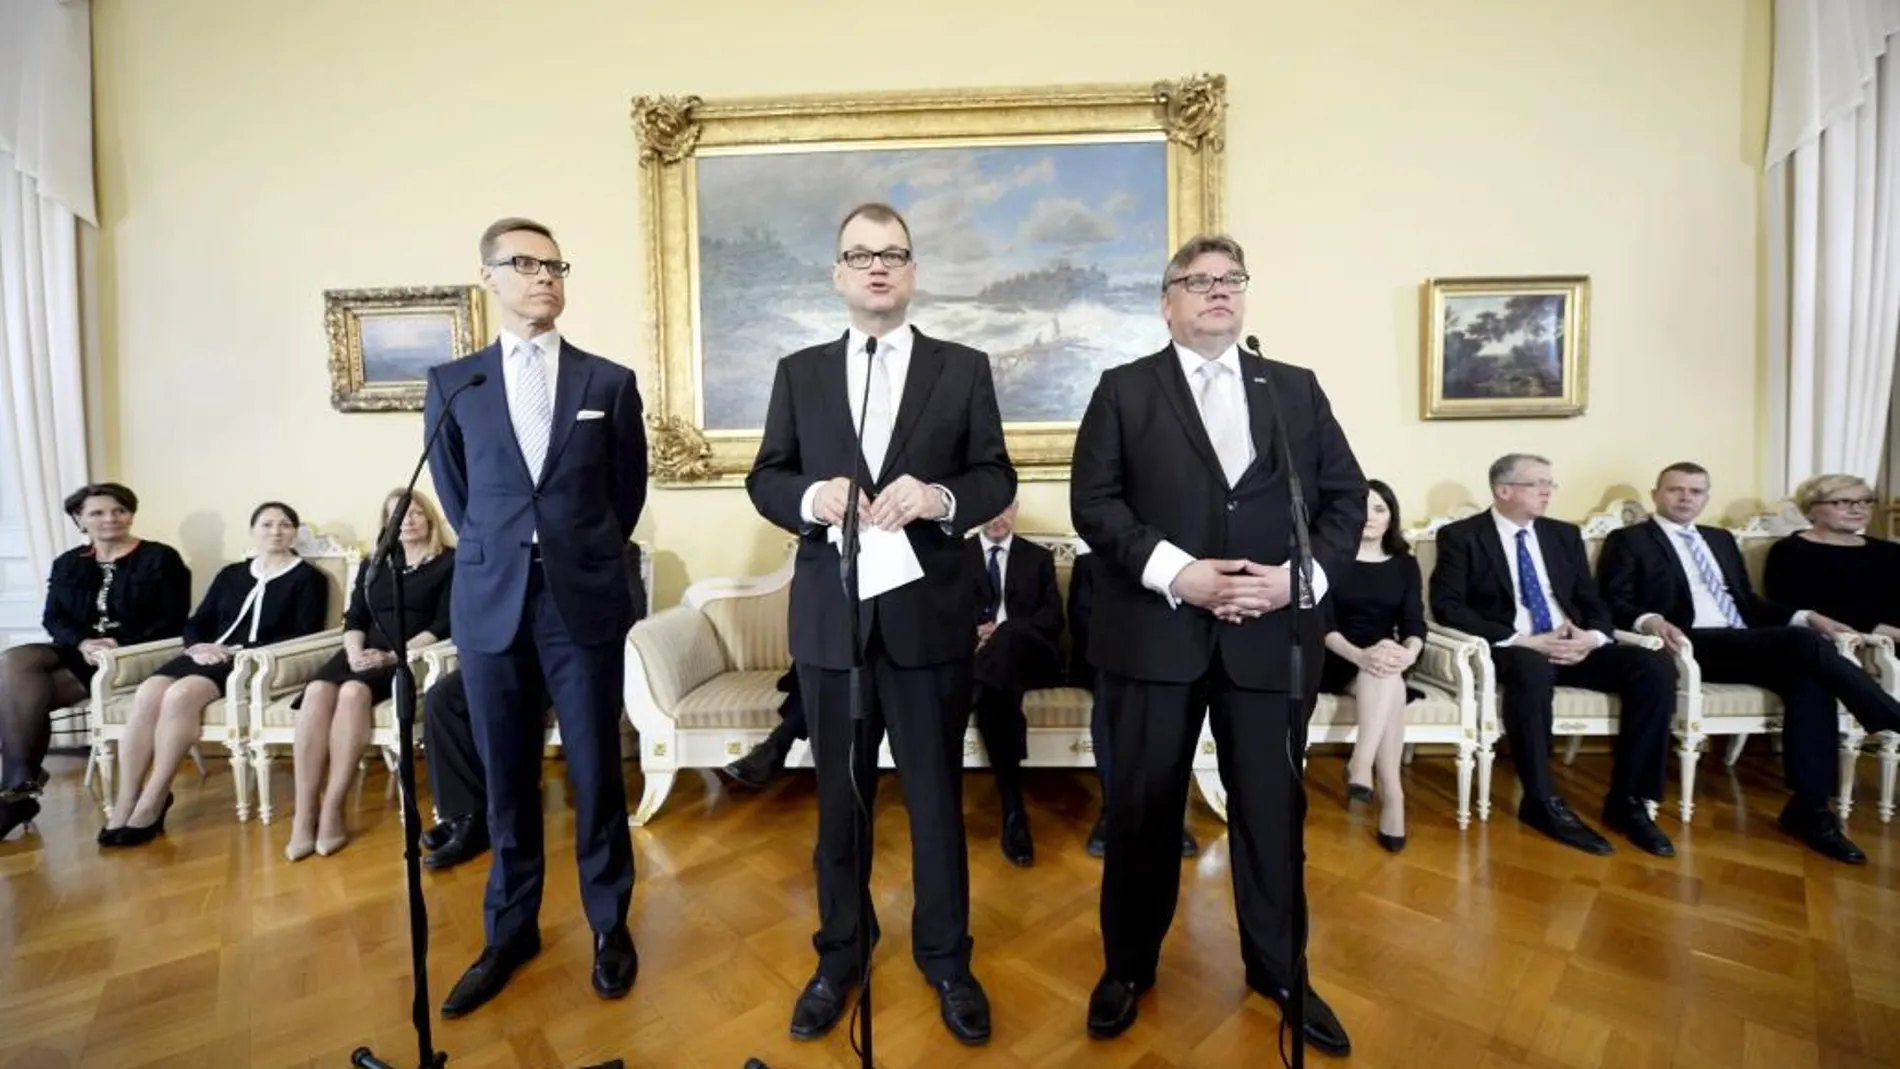 El presidente del Partido de Centro, Juha Sipilä (c) durante una rueda de prensa conjunta con el líder del partido de extrema derecha Verdaderos Finlandeses, Timo Soini (i) y el conservador Alexander Stubb (d)